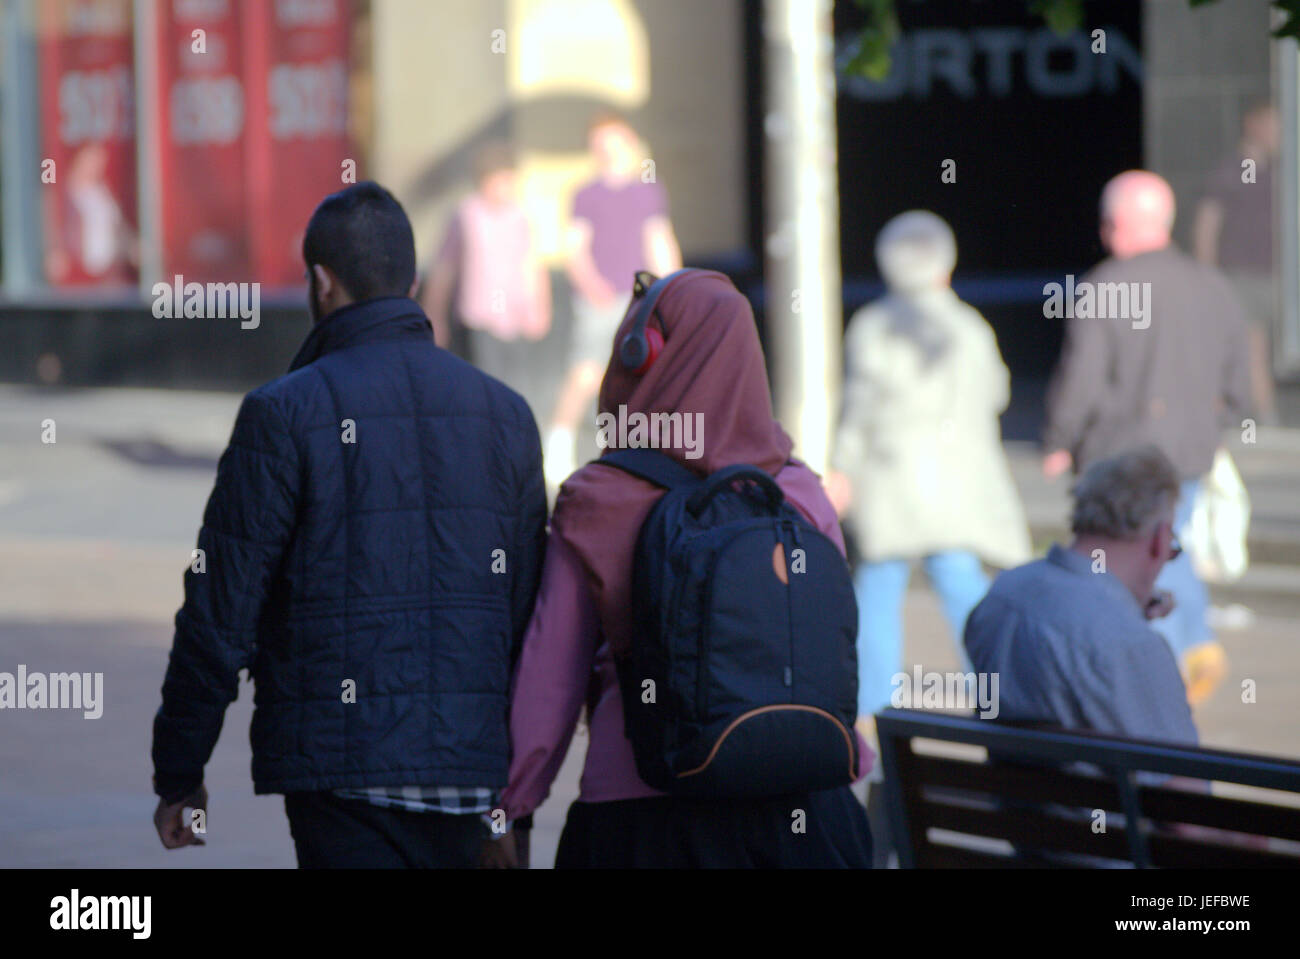 Asiatische Familie Flüchtling gekleidet Hijab Schal auf Straße in der UK alltägliche Szene junges Paar Mädchen Kopfhörer auf Schal Musikhören Stockfoto